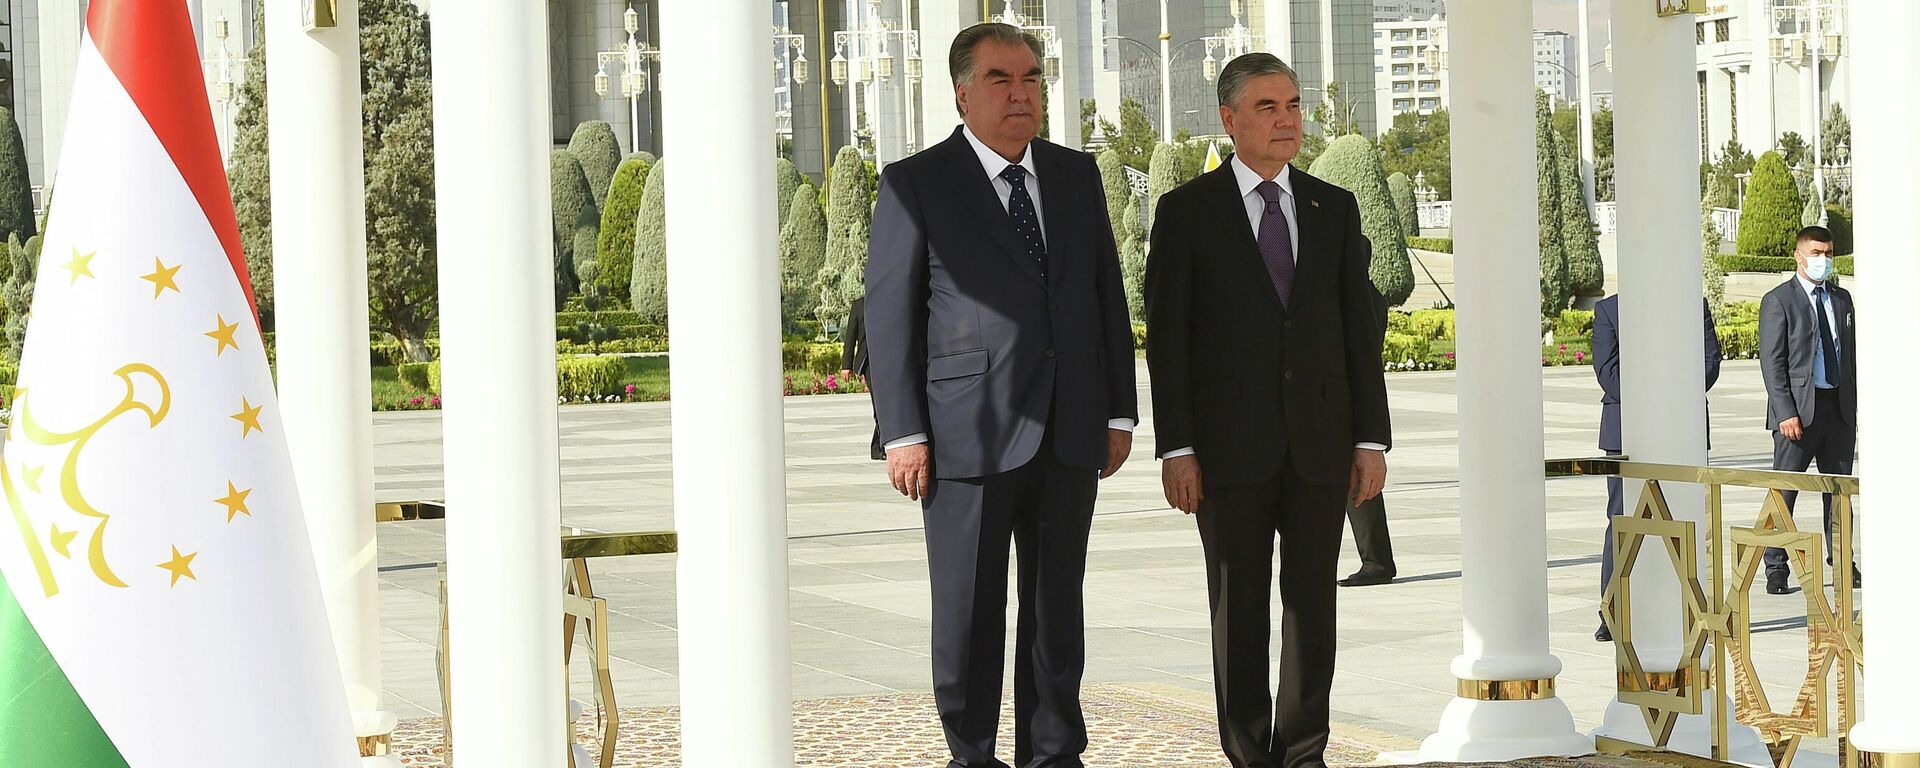 Эмомали Рахмон президент Таджикистана, и Гурбангулы Бердымухамедов президент Туркменистана - Sputnik Таджикистан, 1920, 04.08.2021